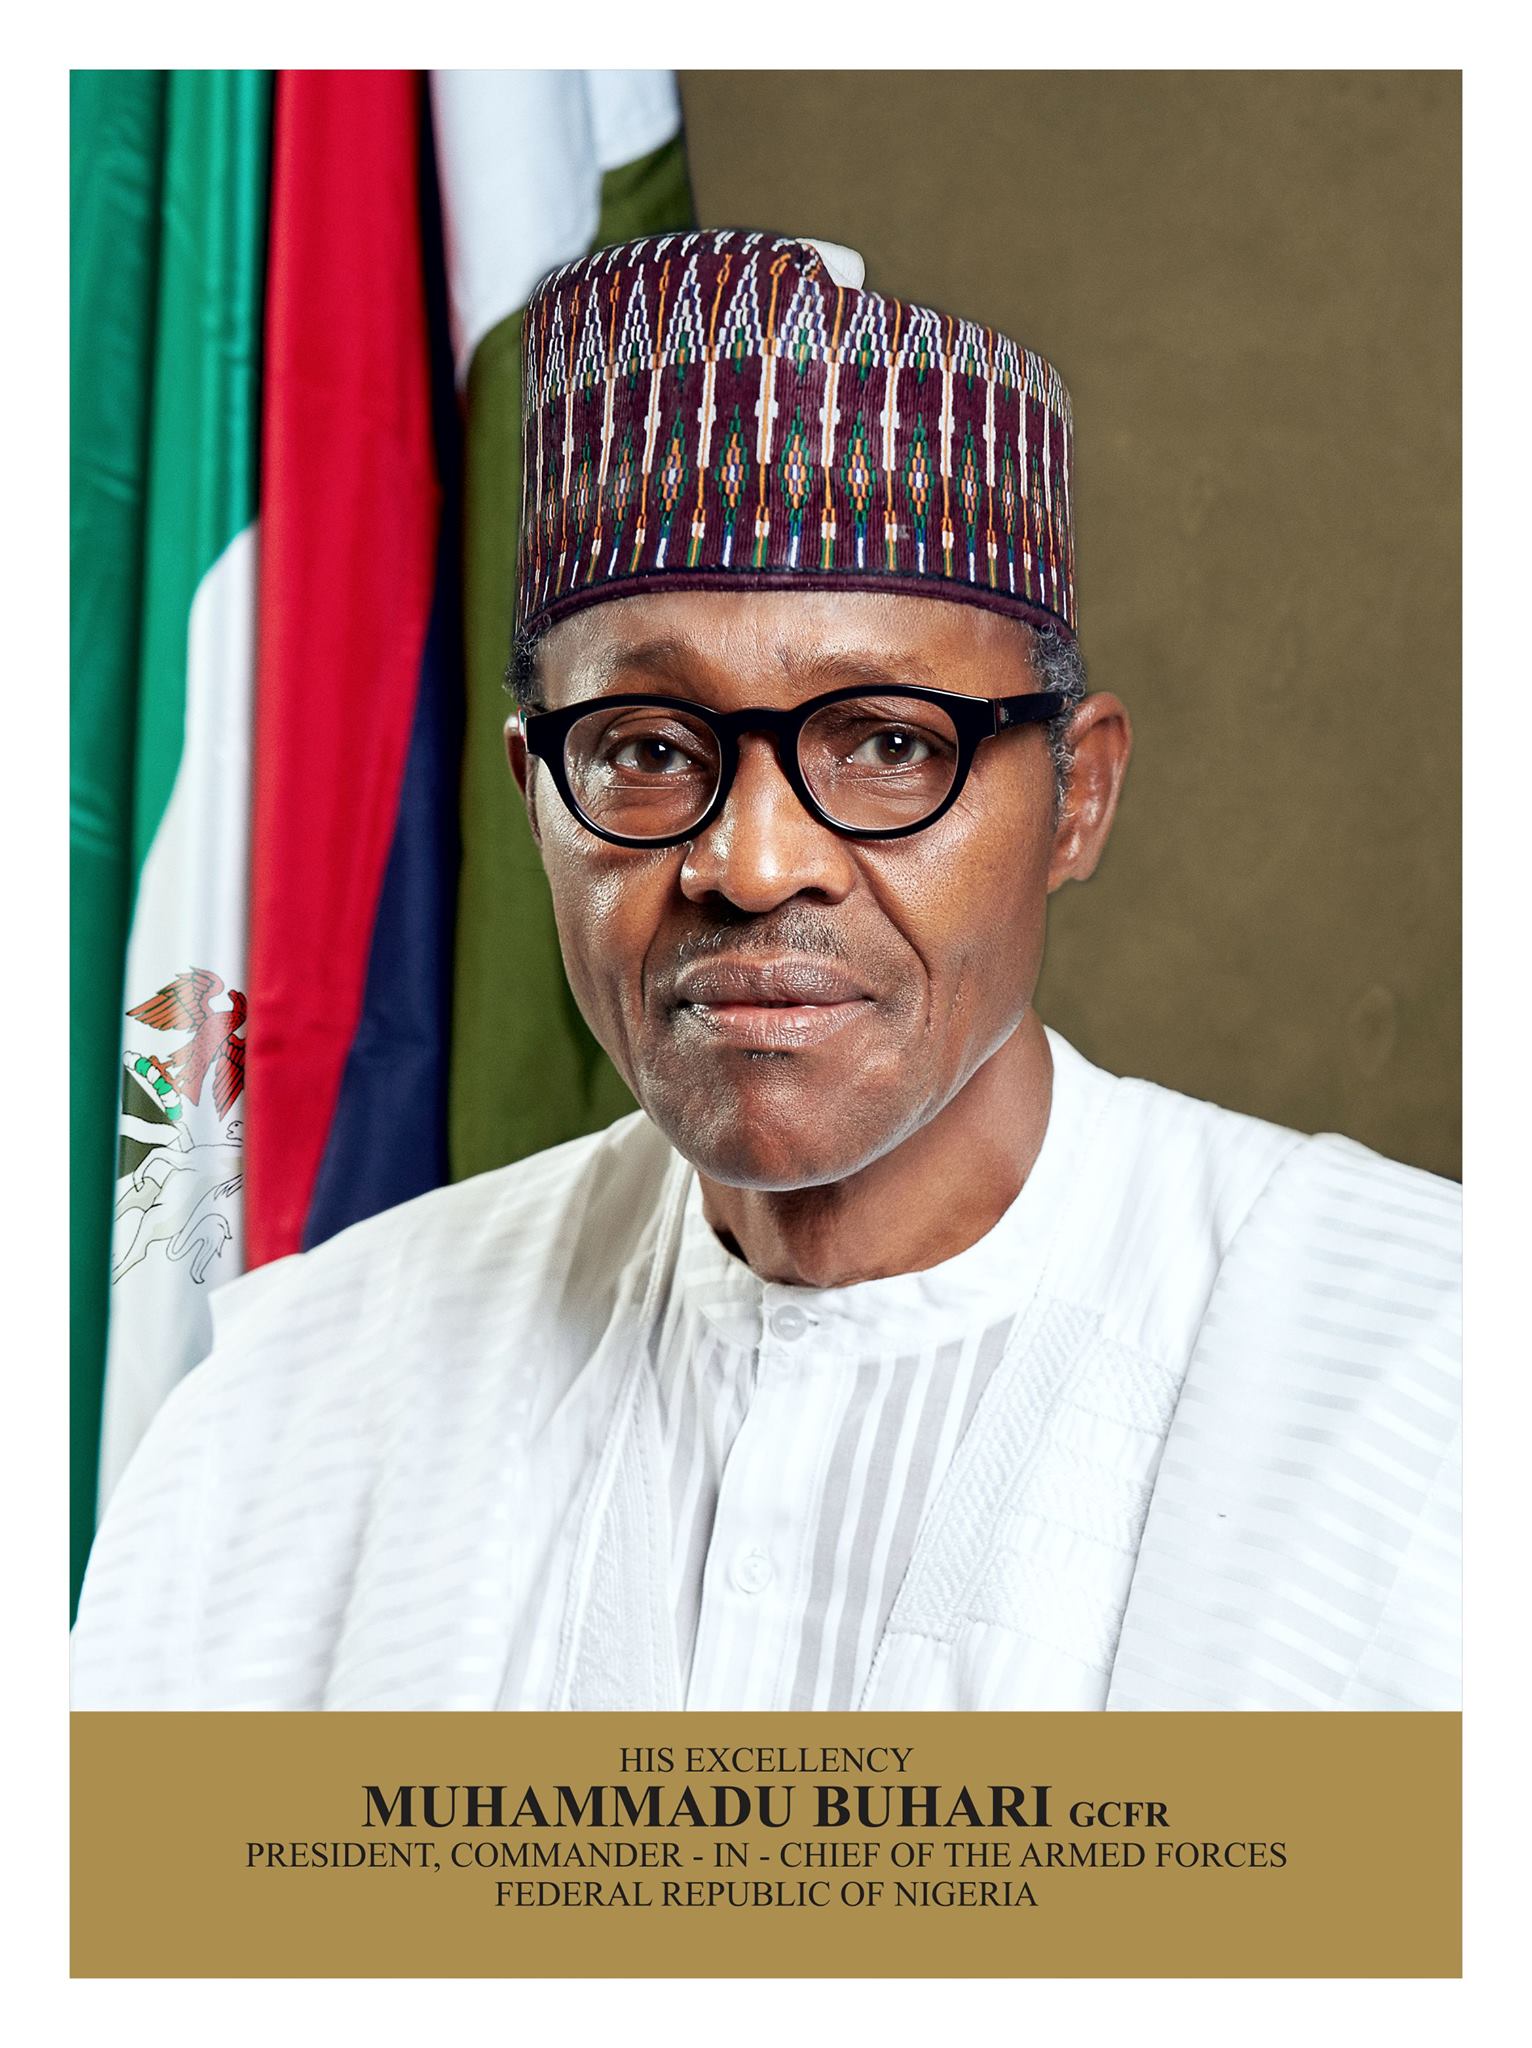 Nigéria: Buhari de retour, mais le vice-Président assure l'interim